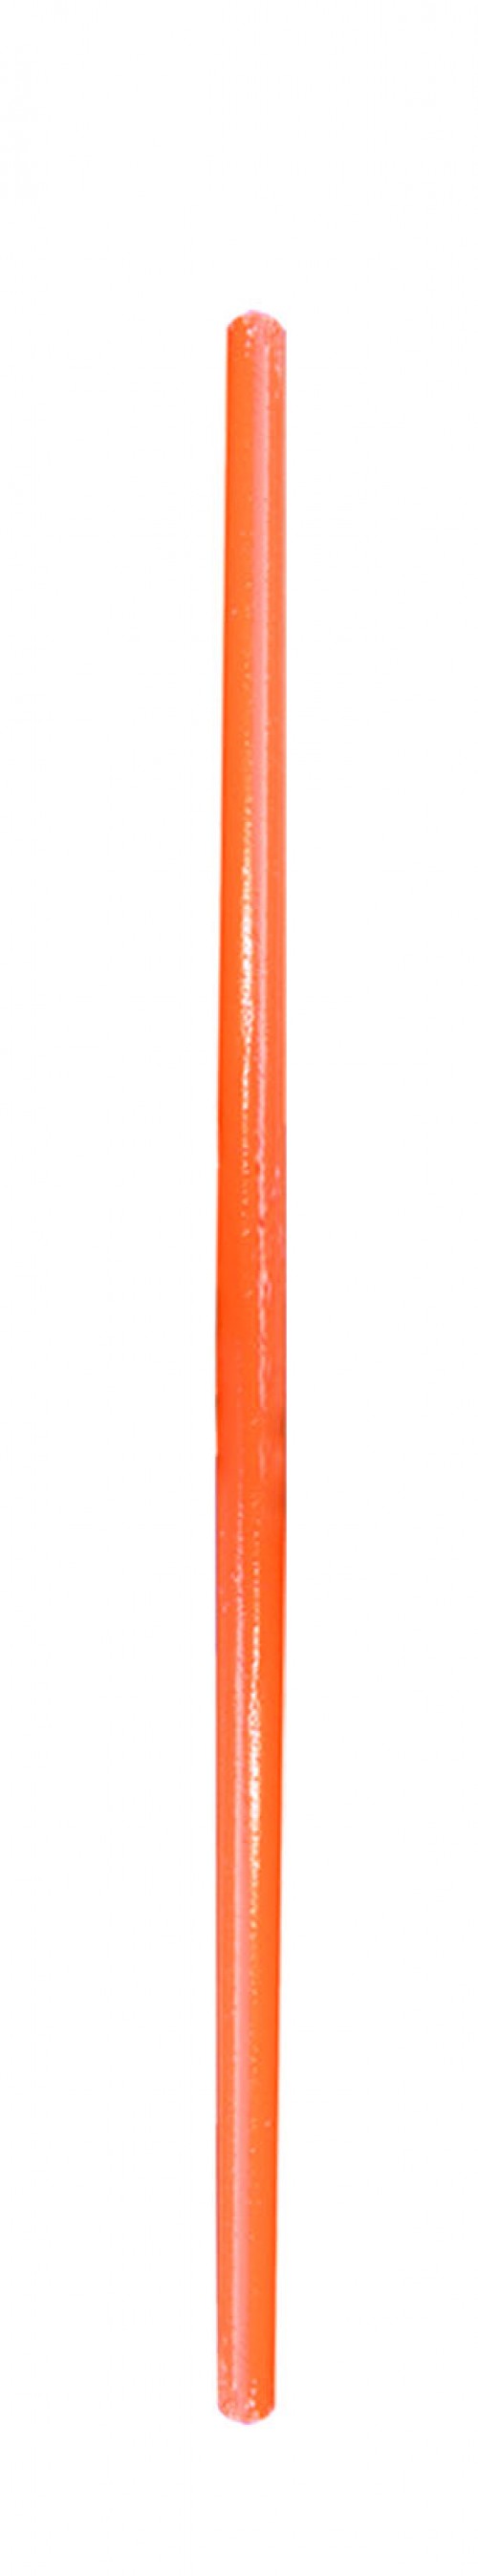 Jalon de balisage bambou ou polycarbonate modèle EKO orange